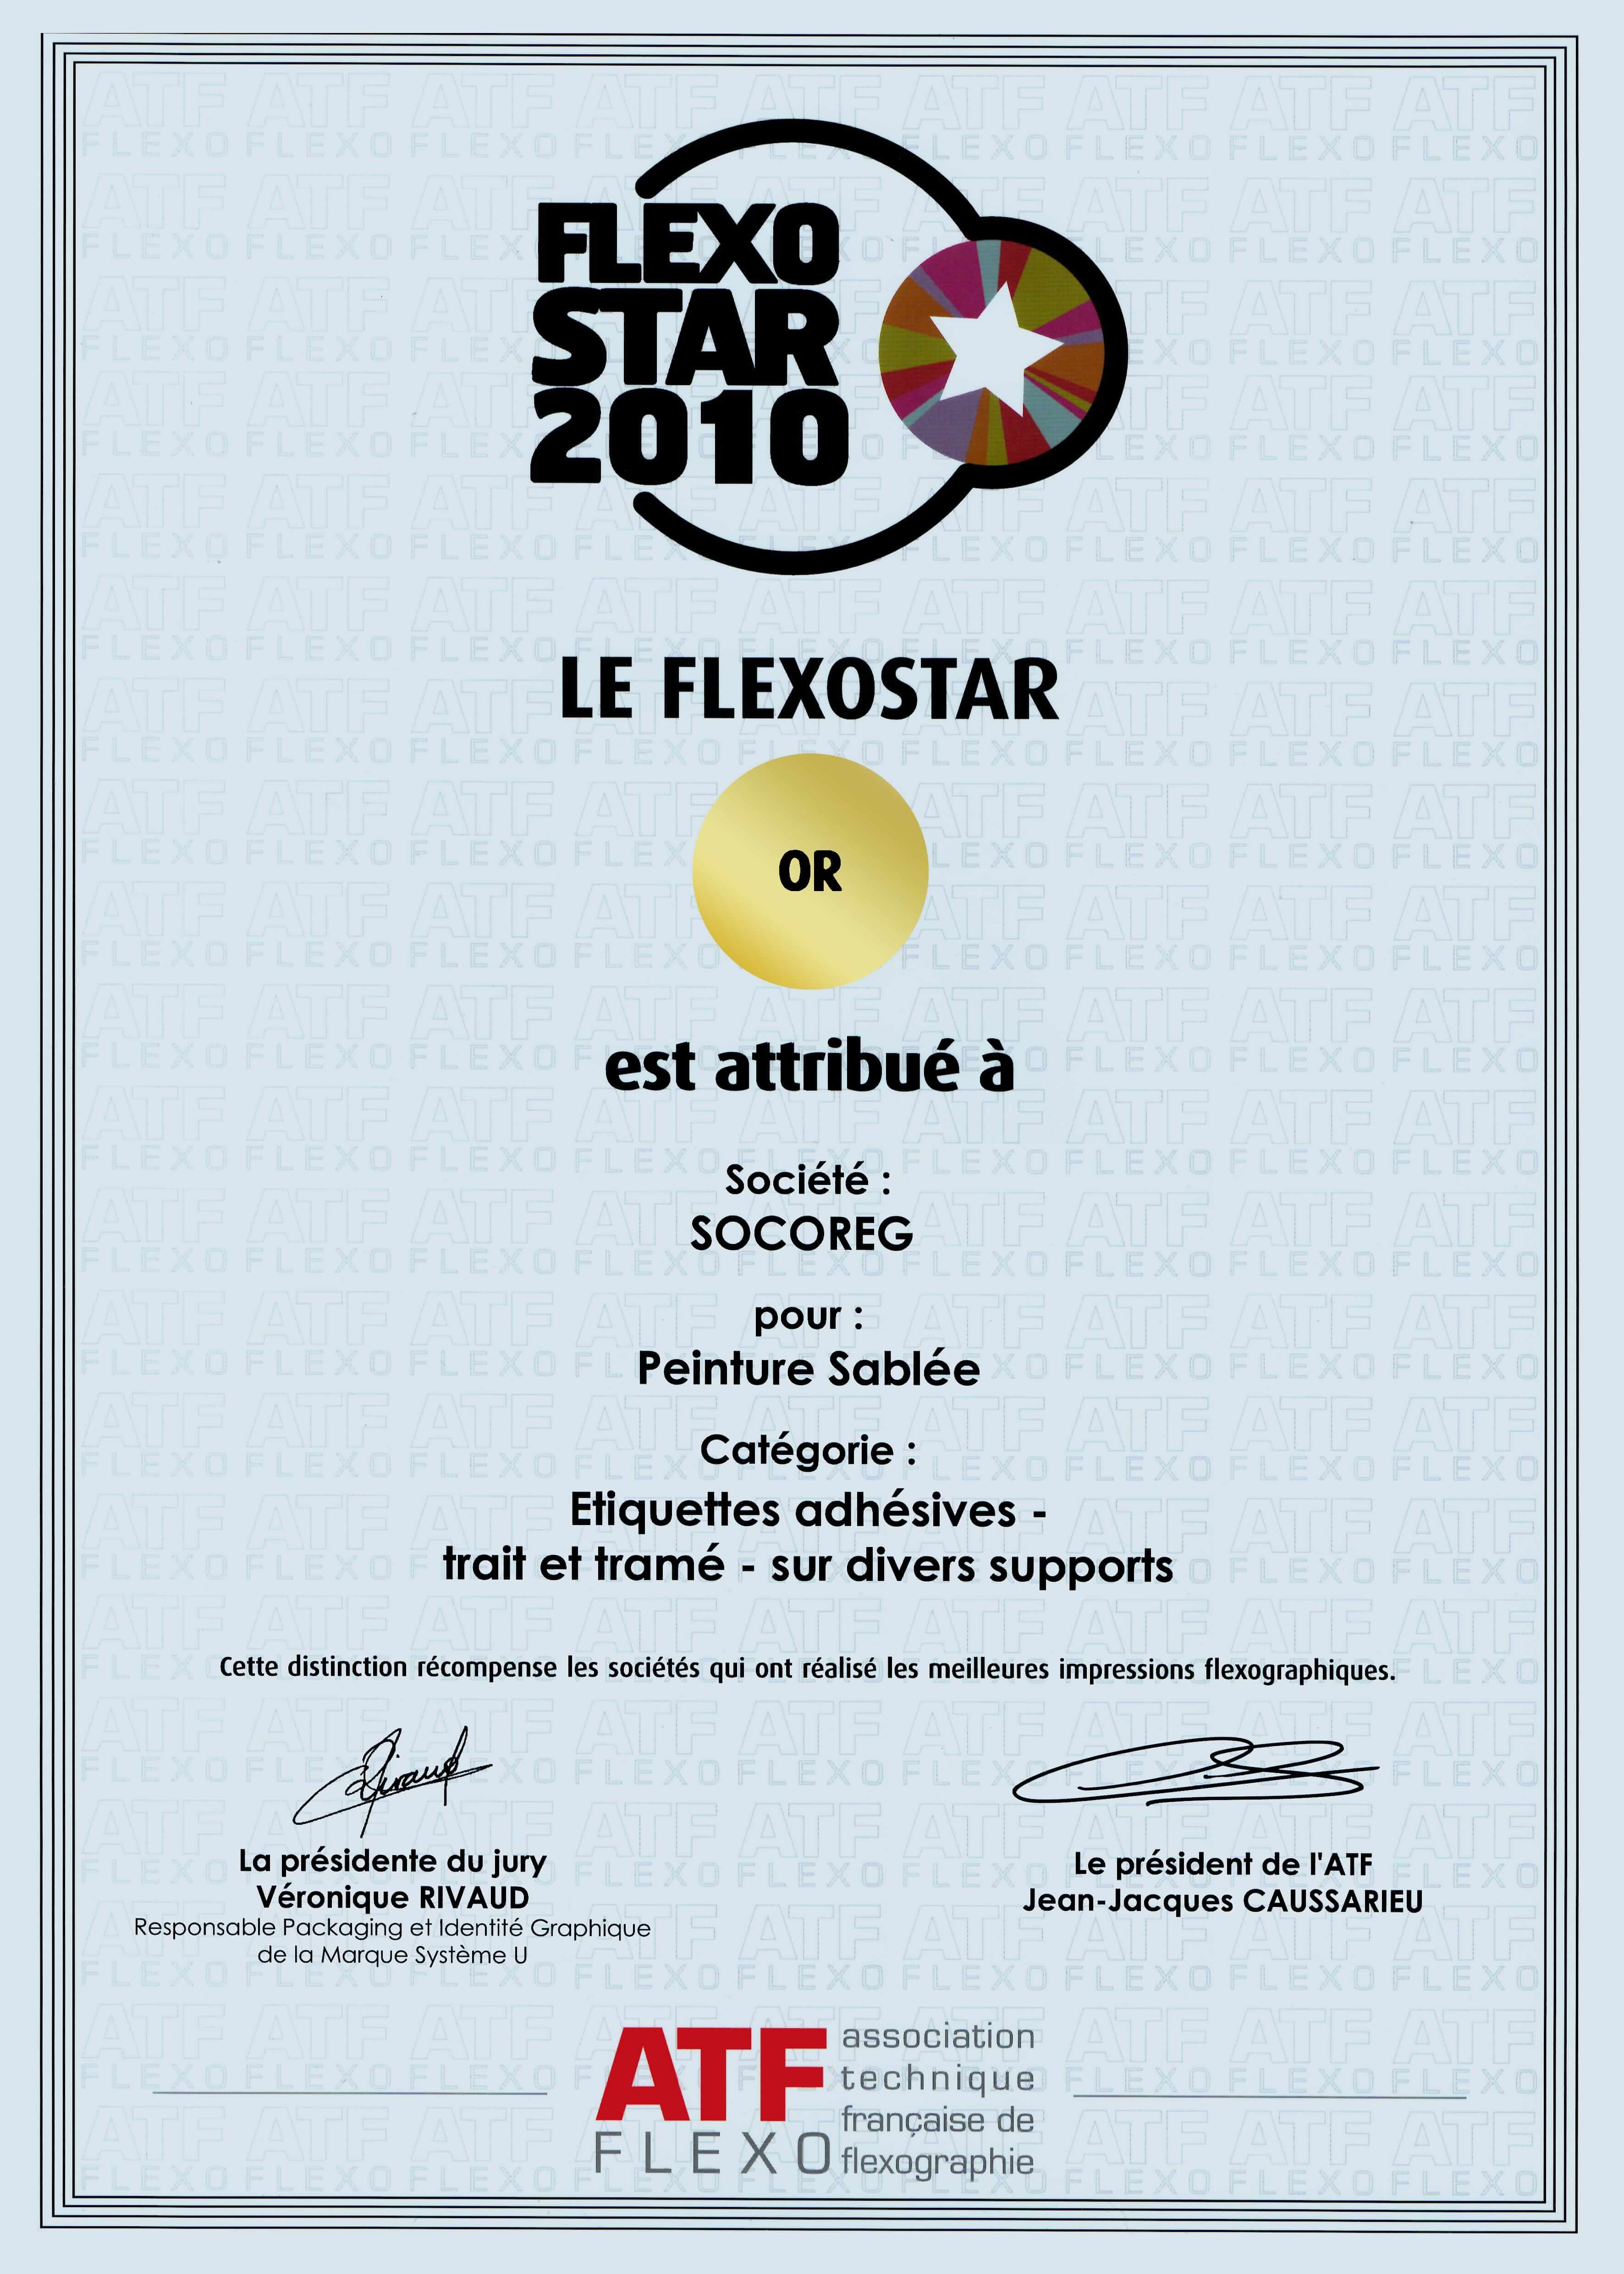 Flexo Star 2010 OR